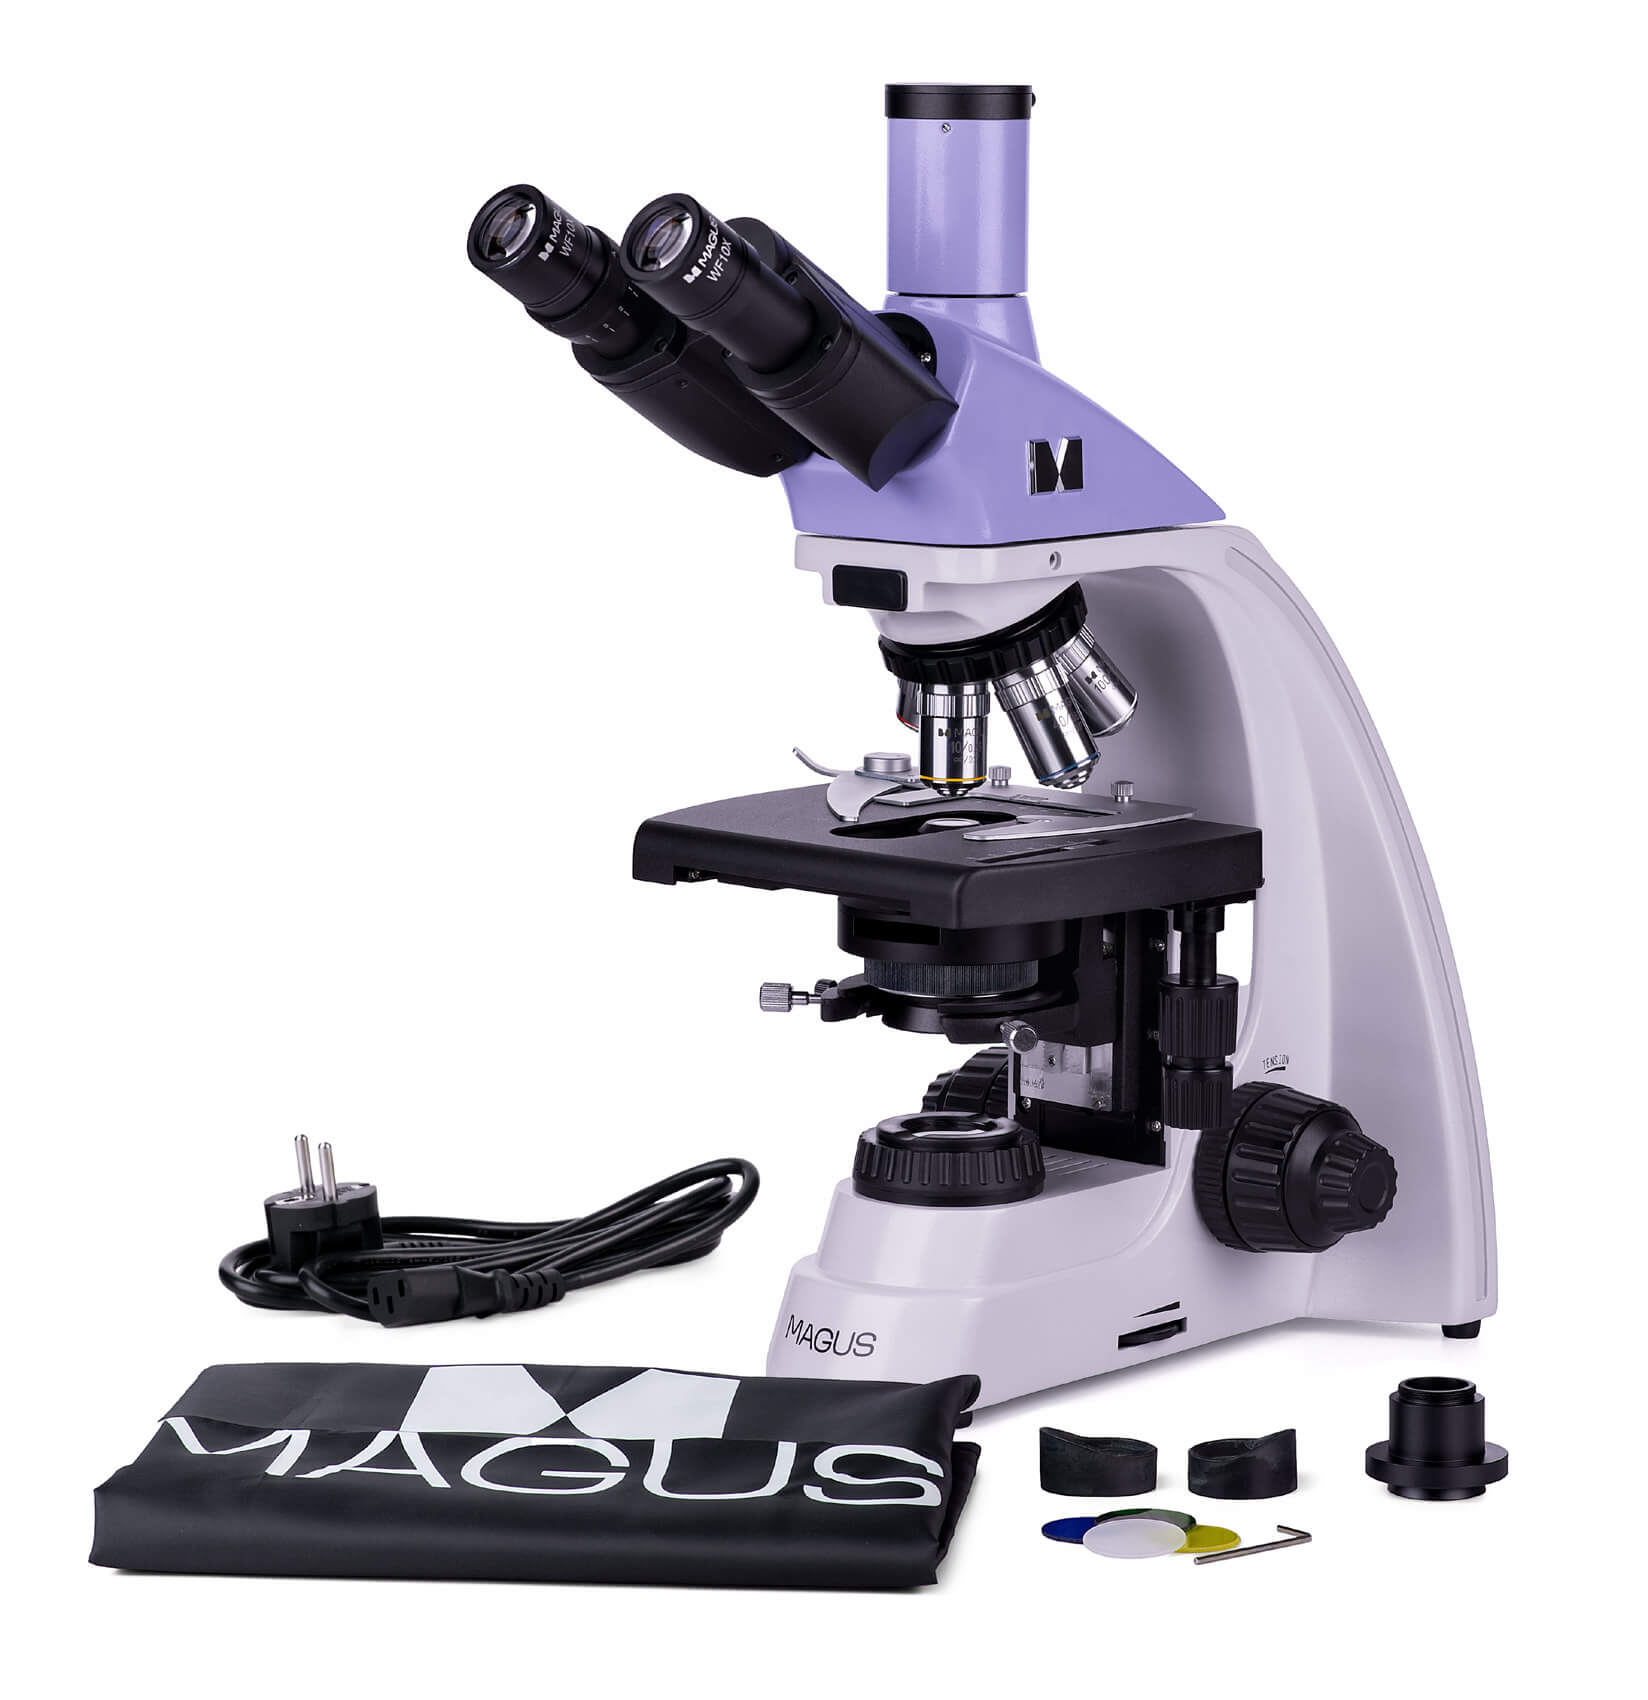 Trinokulárny, biologický mikroskop MAGUS Bio 230T obsah balenia